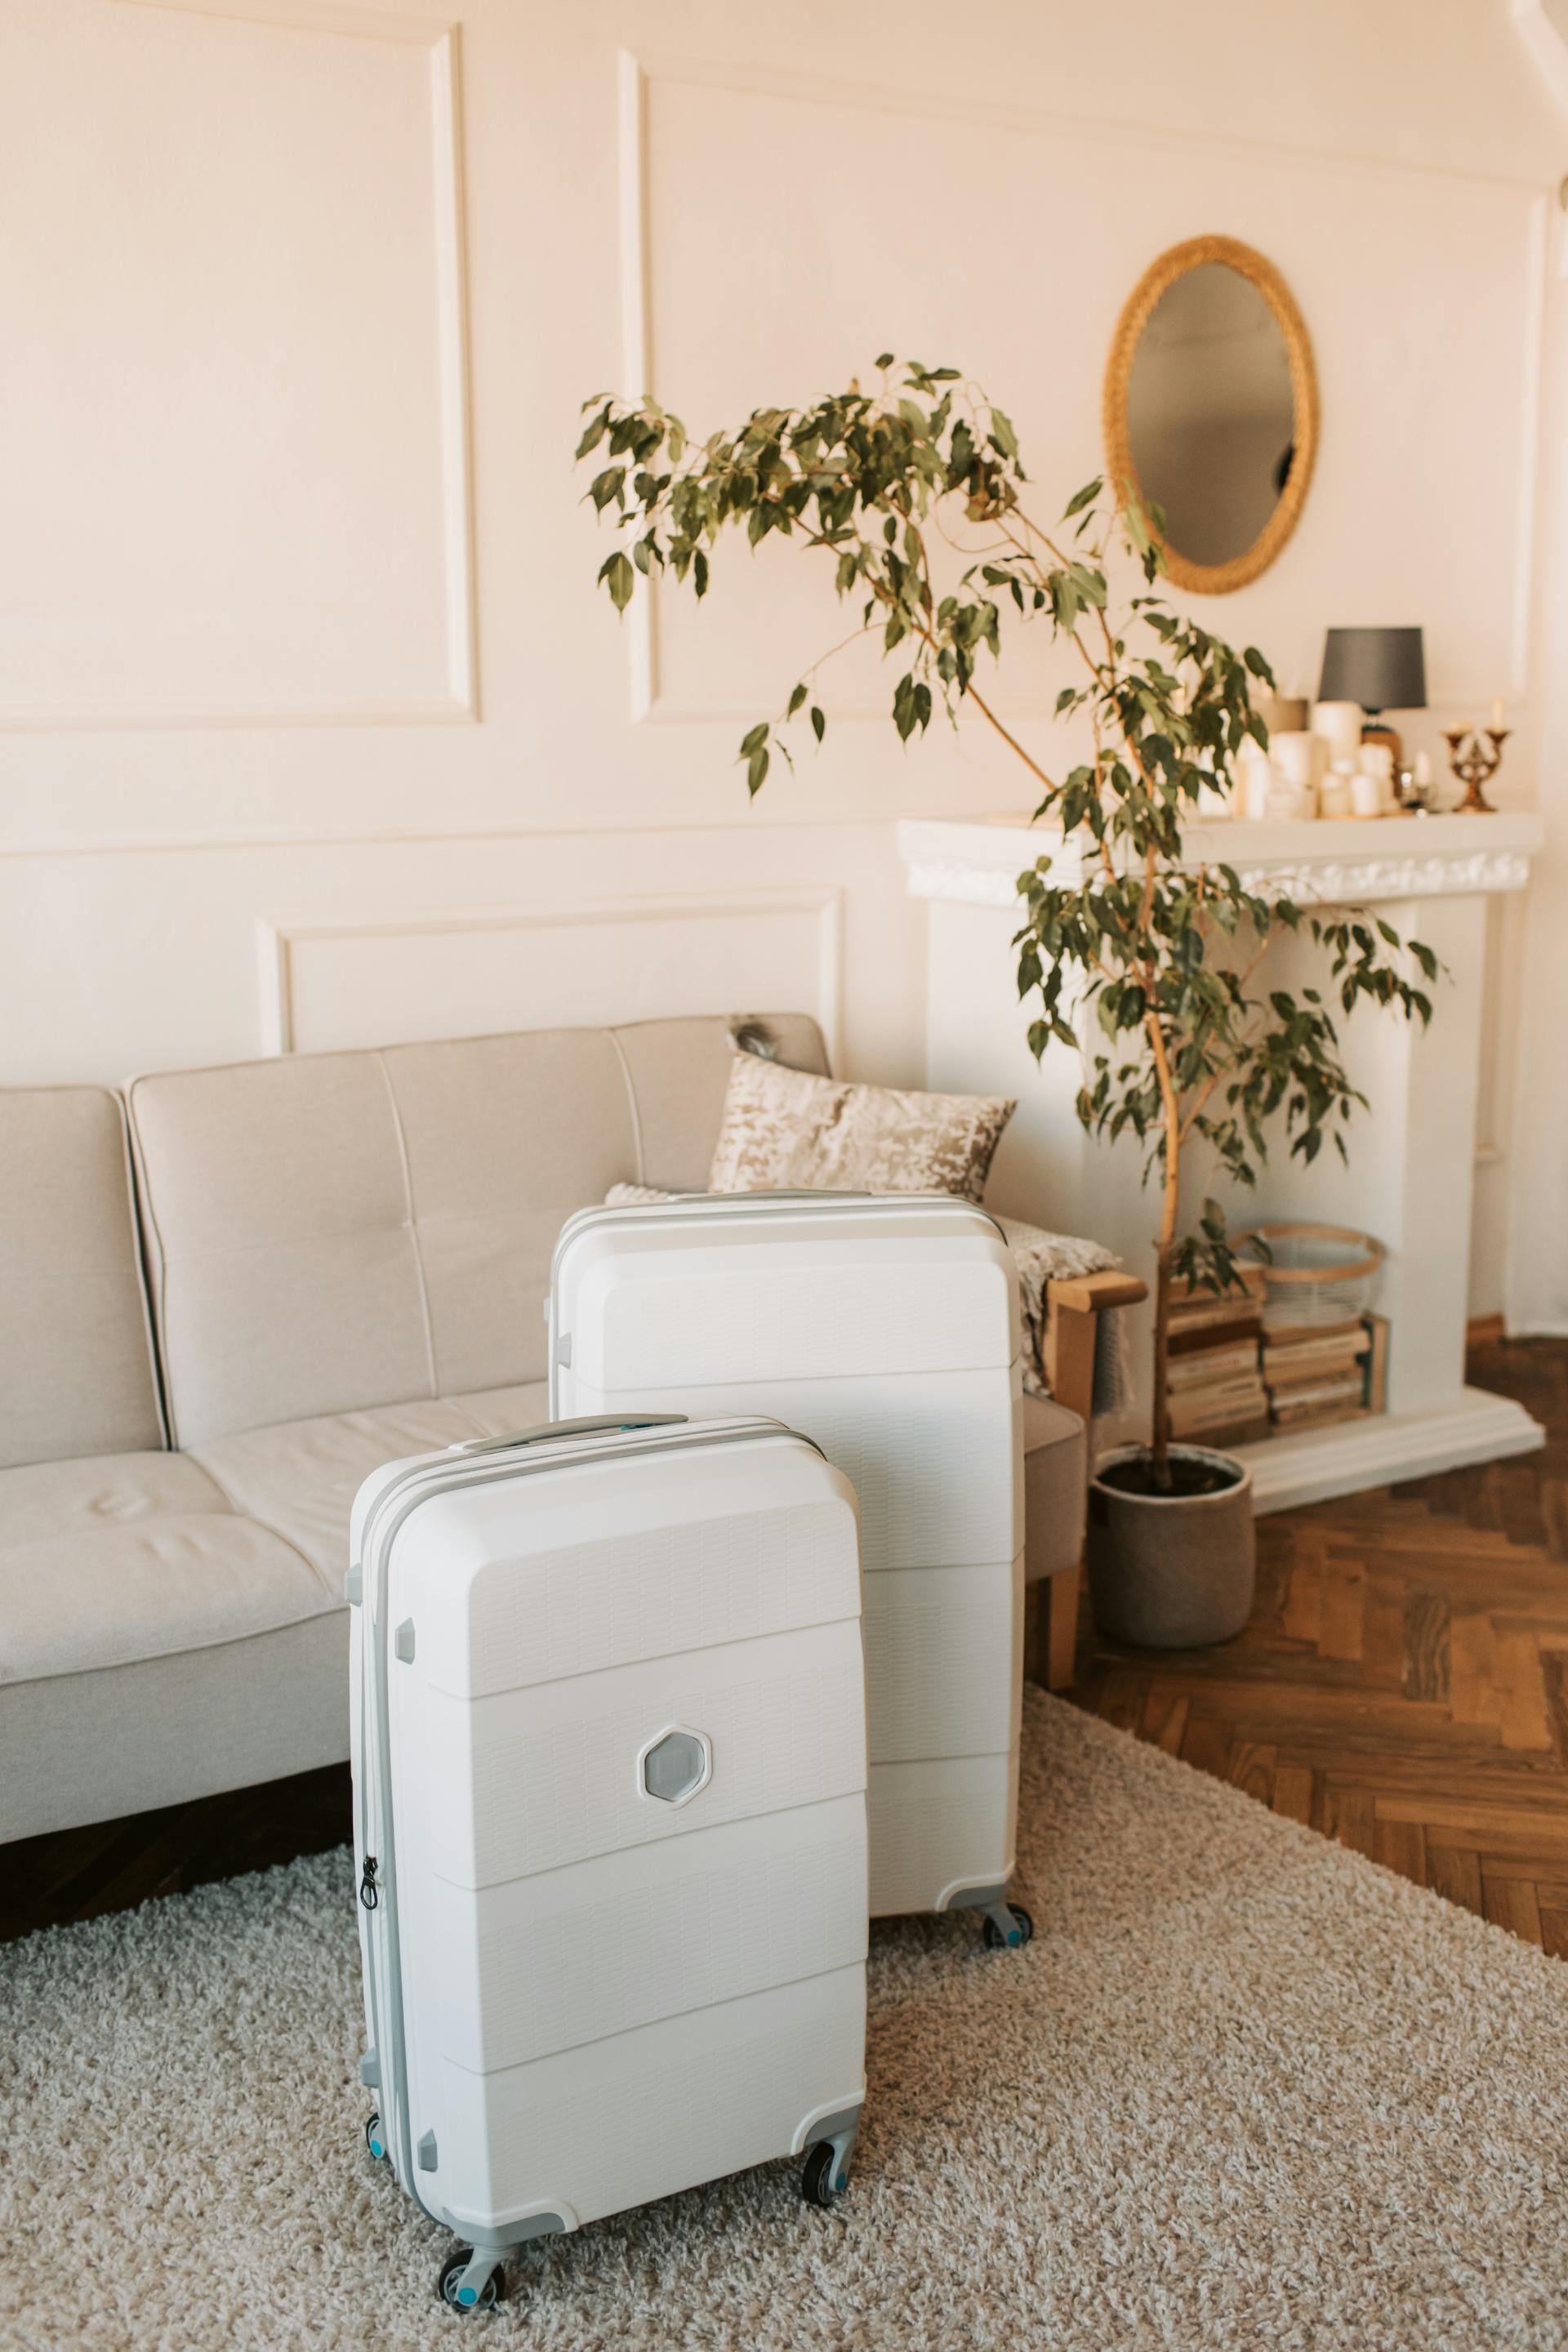 Weiße Koffer in einem Wohnzimmer | Quelle: Pexels